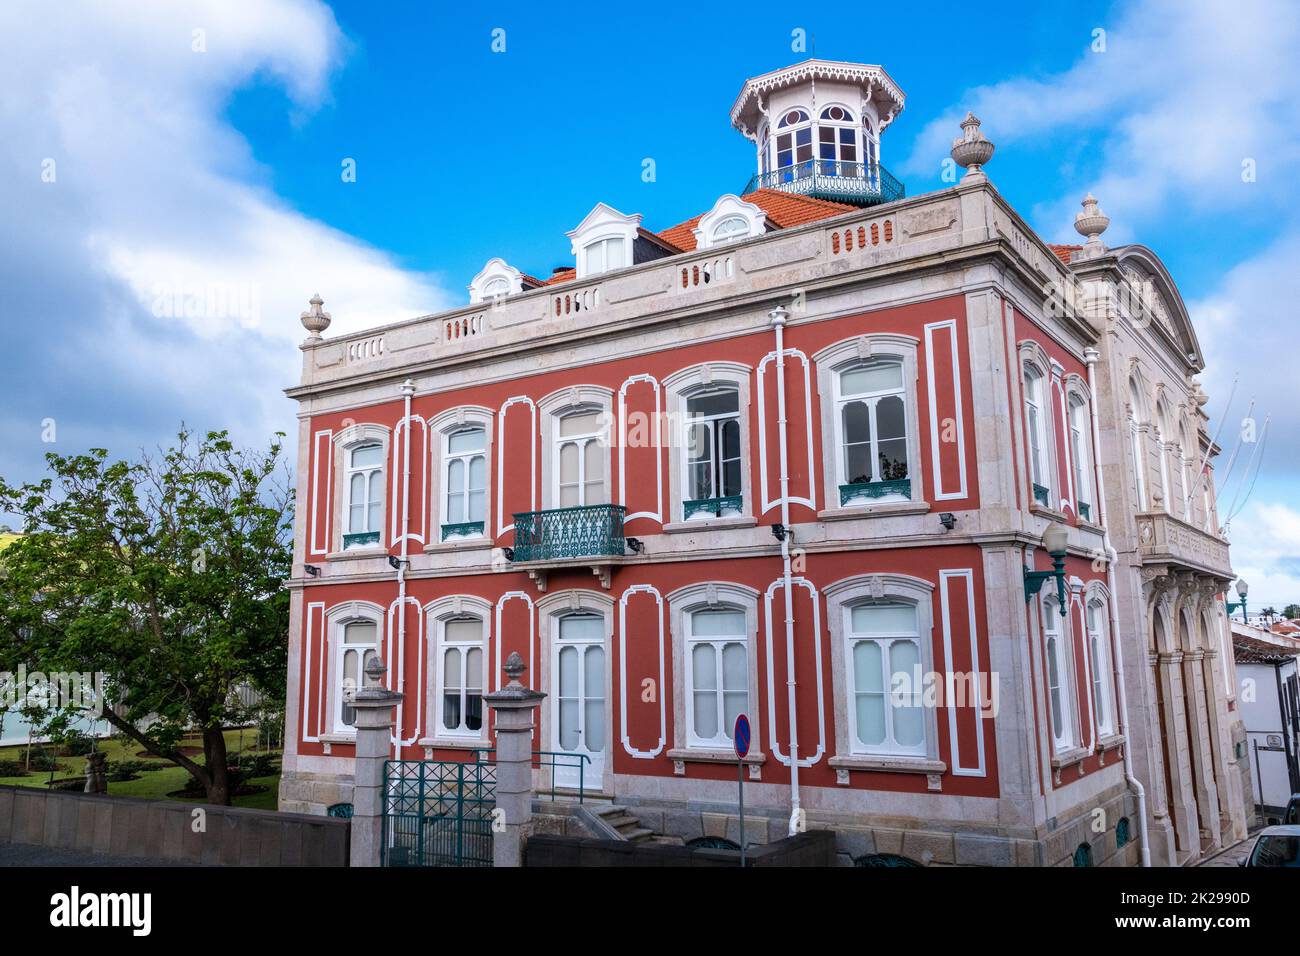 La residencia Silveira e Paulo, o el Palacete Silveira e Paulo en Rua da Conceicao en Angra do Heroismo, Isla Terceira, Azores, Portugal. Foto de stock